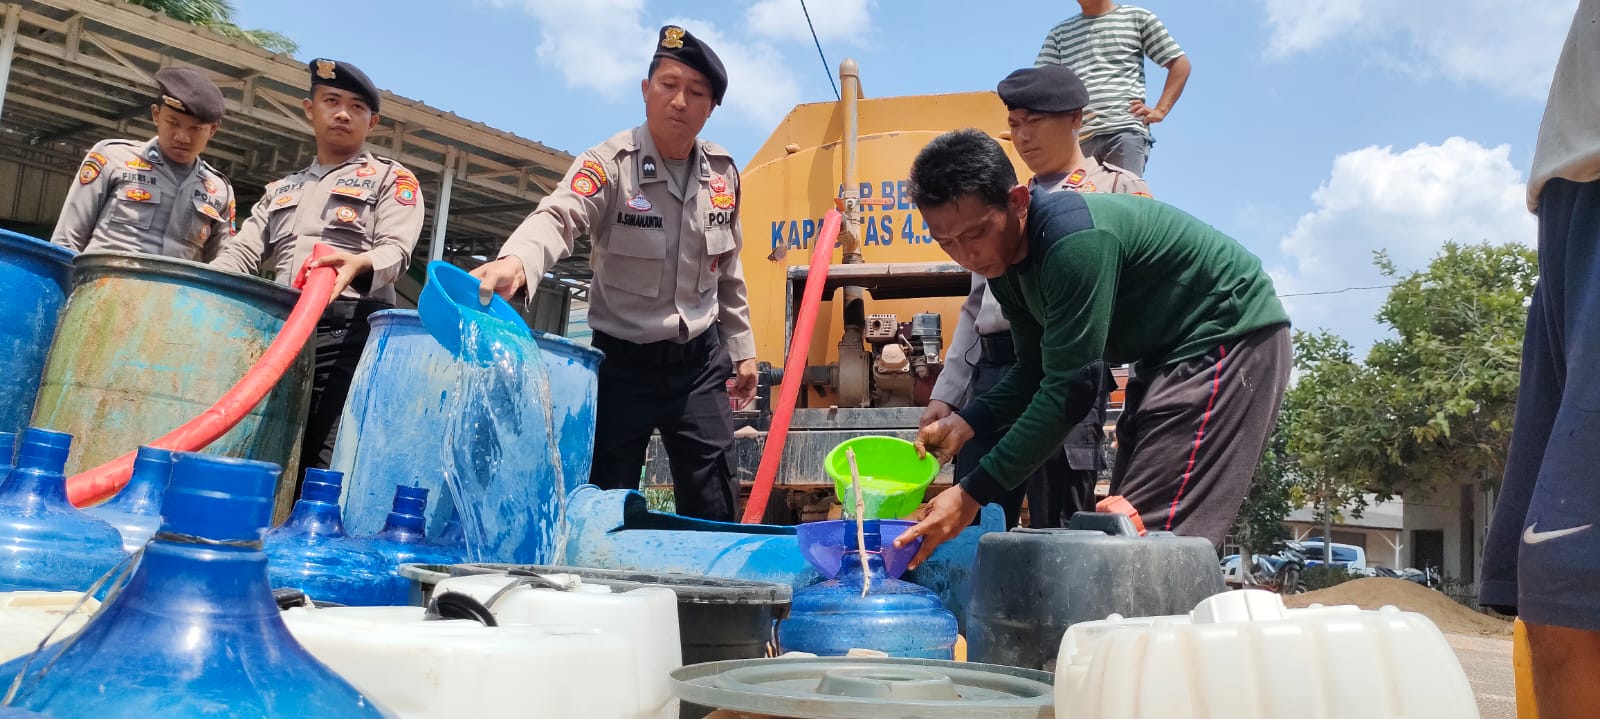 Jumat Curhat di Desa Rias, Polres Basel Distribusikan 4.500 Liter Air Bersih 